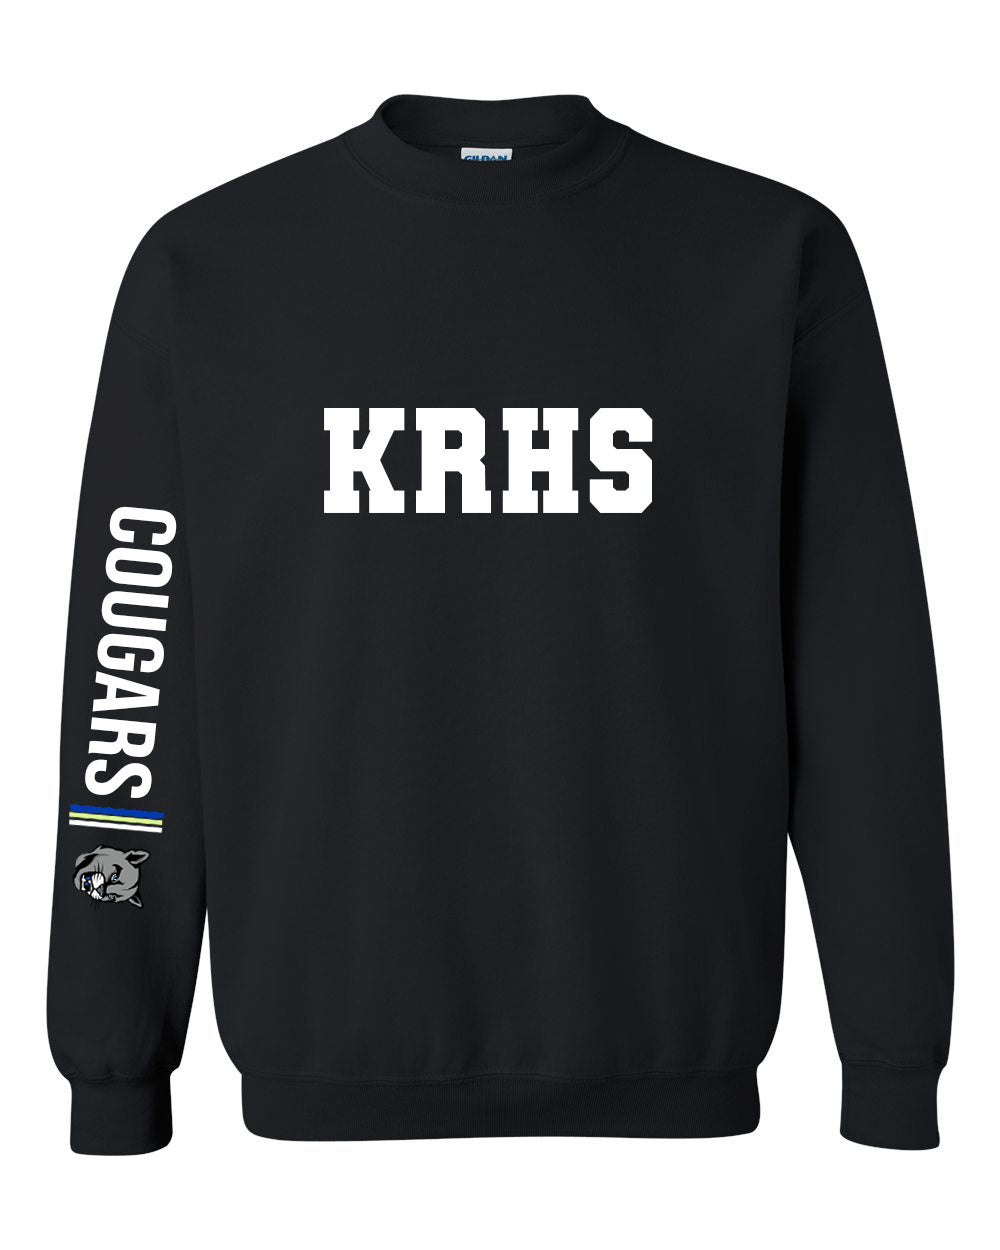 KRHS Design 5 non hooded sweatshirt